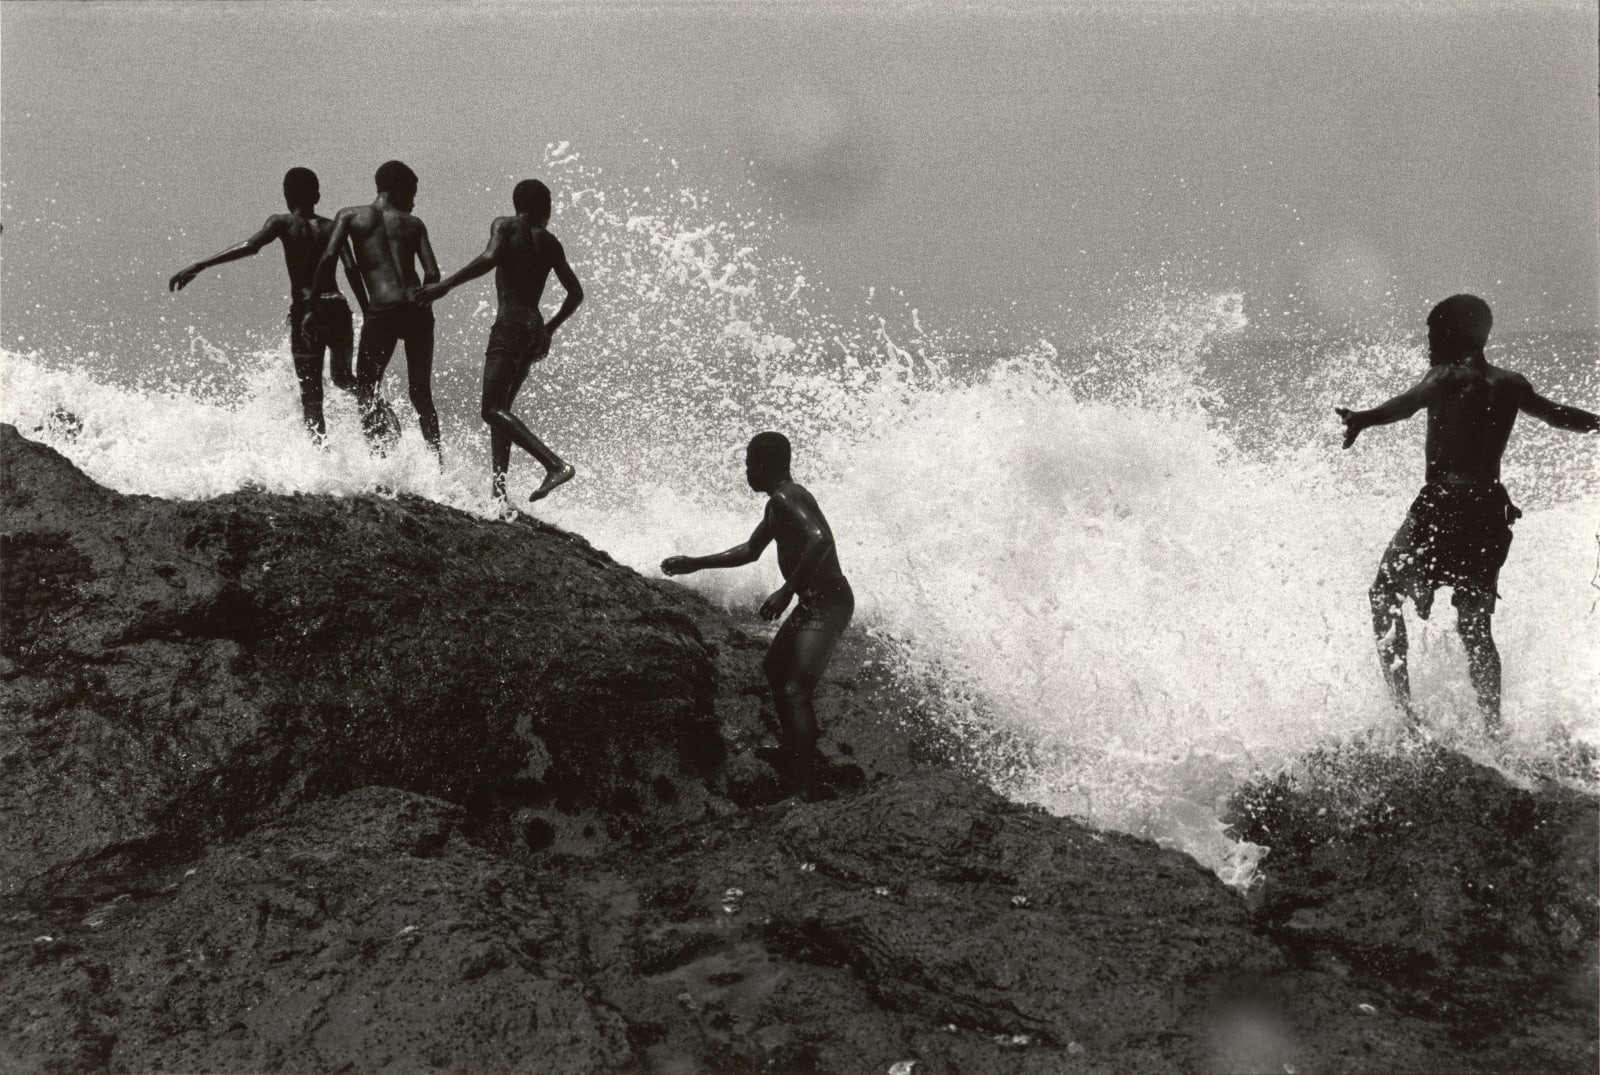 Chester Higgins, Ocean Spray, Accra, Ghana, 1973 | Bruce Silverstein